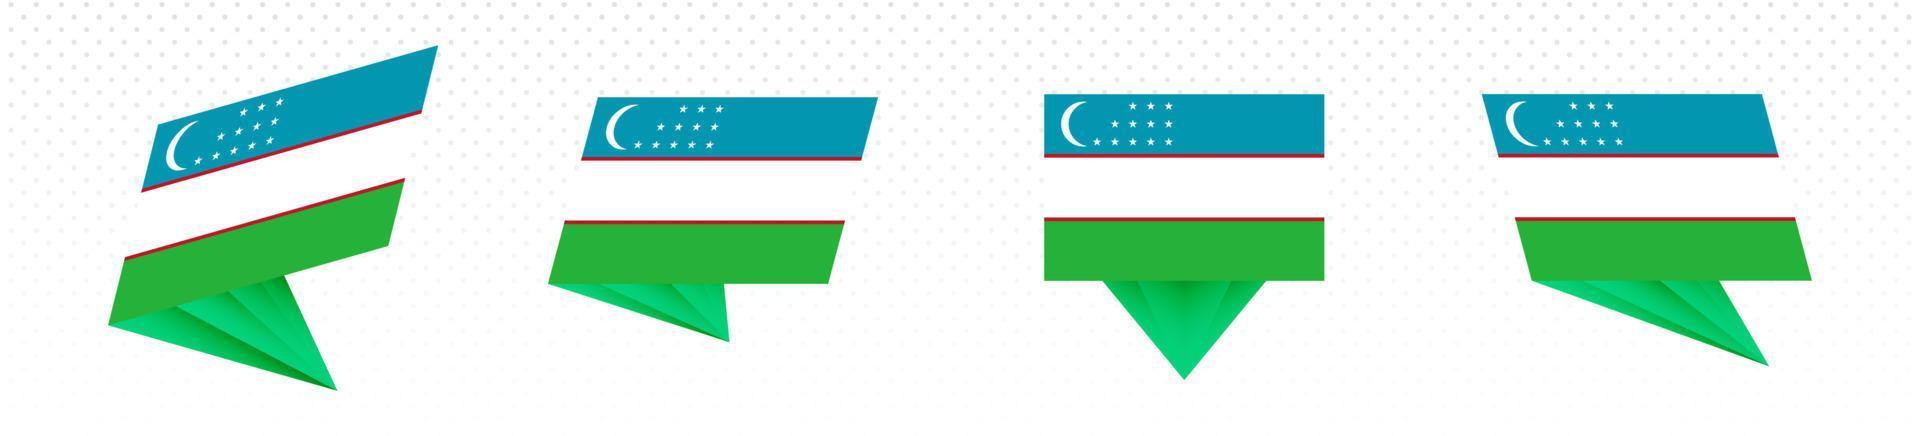 Flagge Usbekistans im modernen abstrakten Design, Flaggensatz. vektor